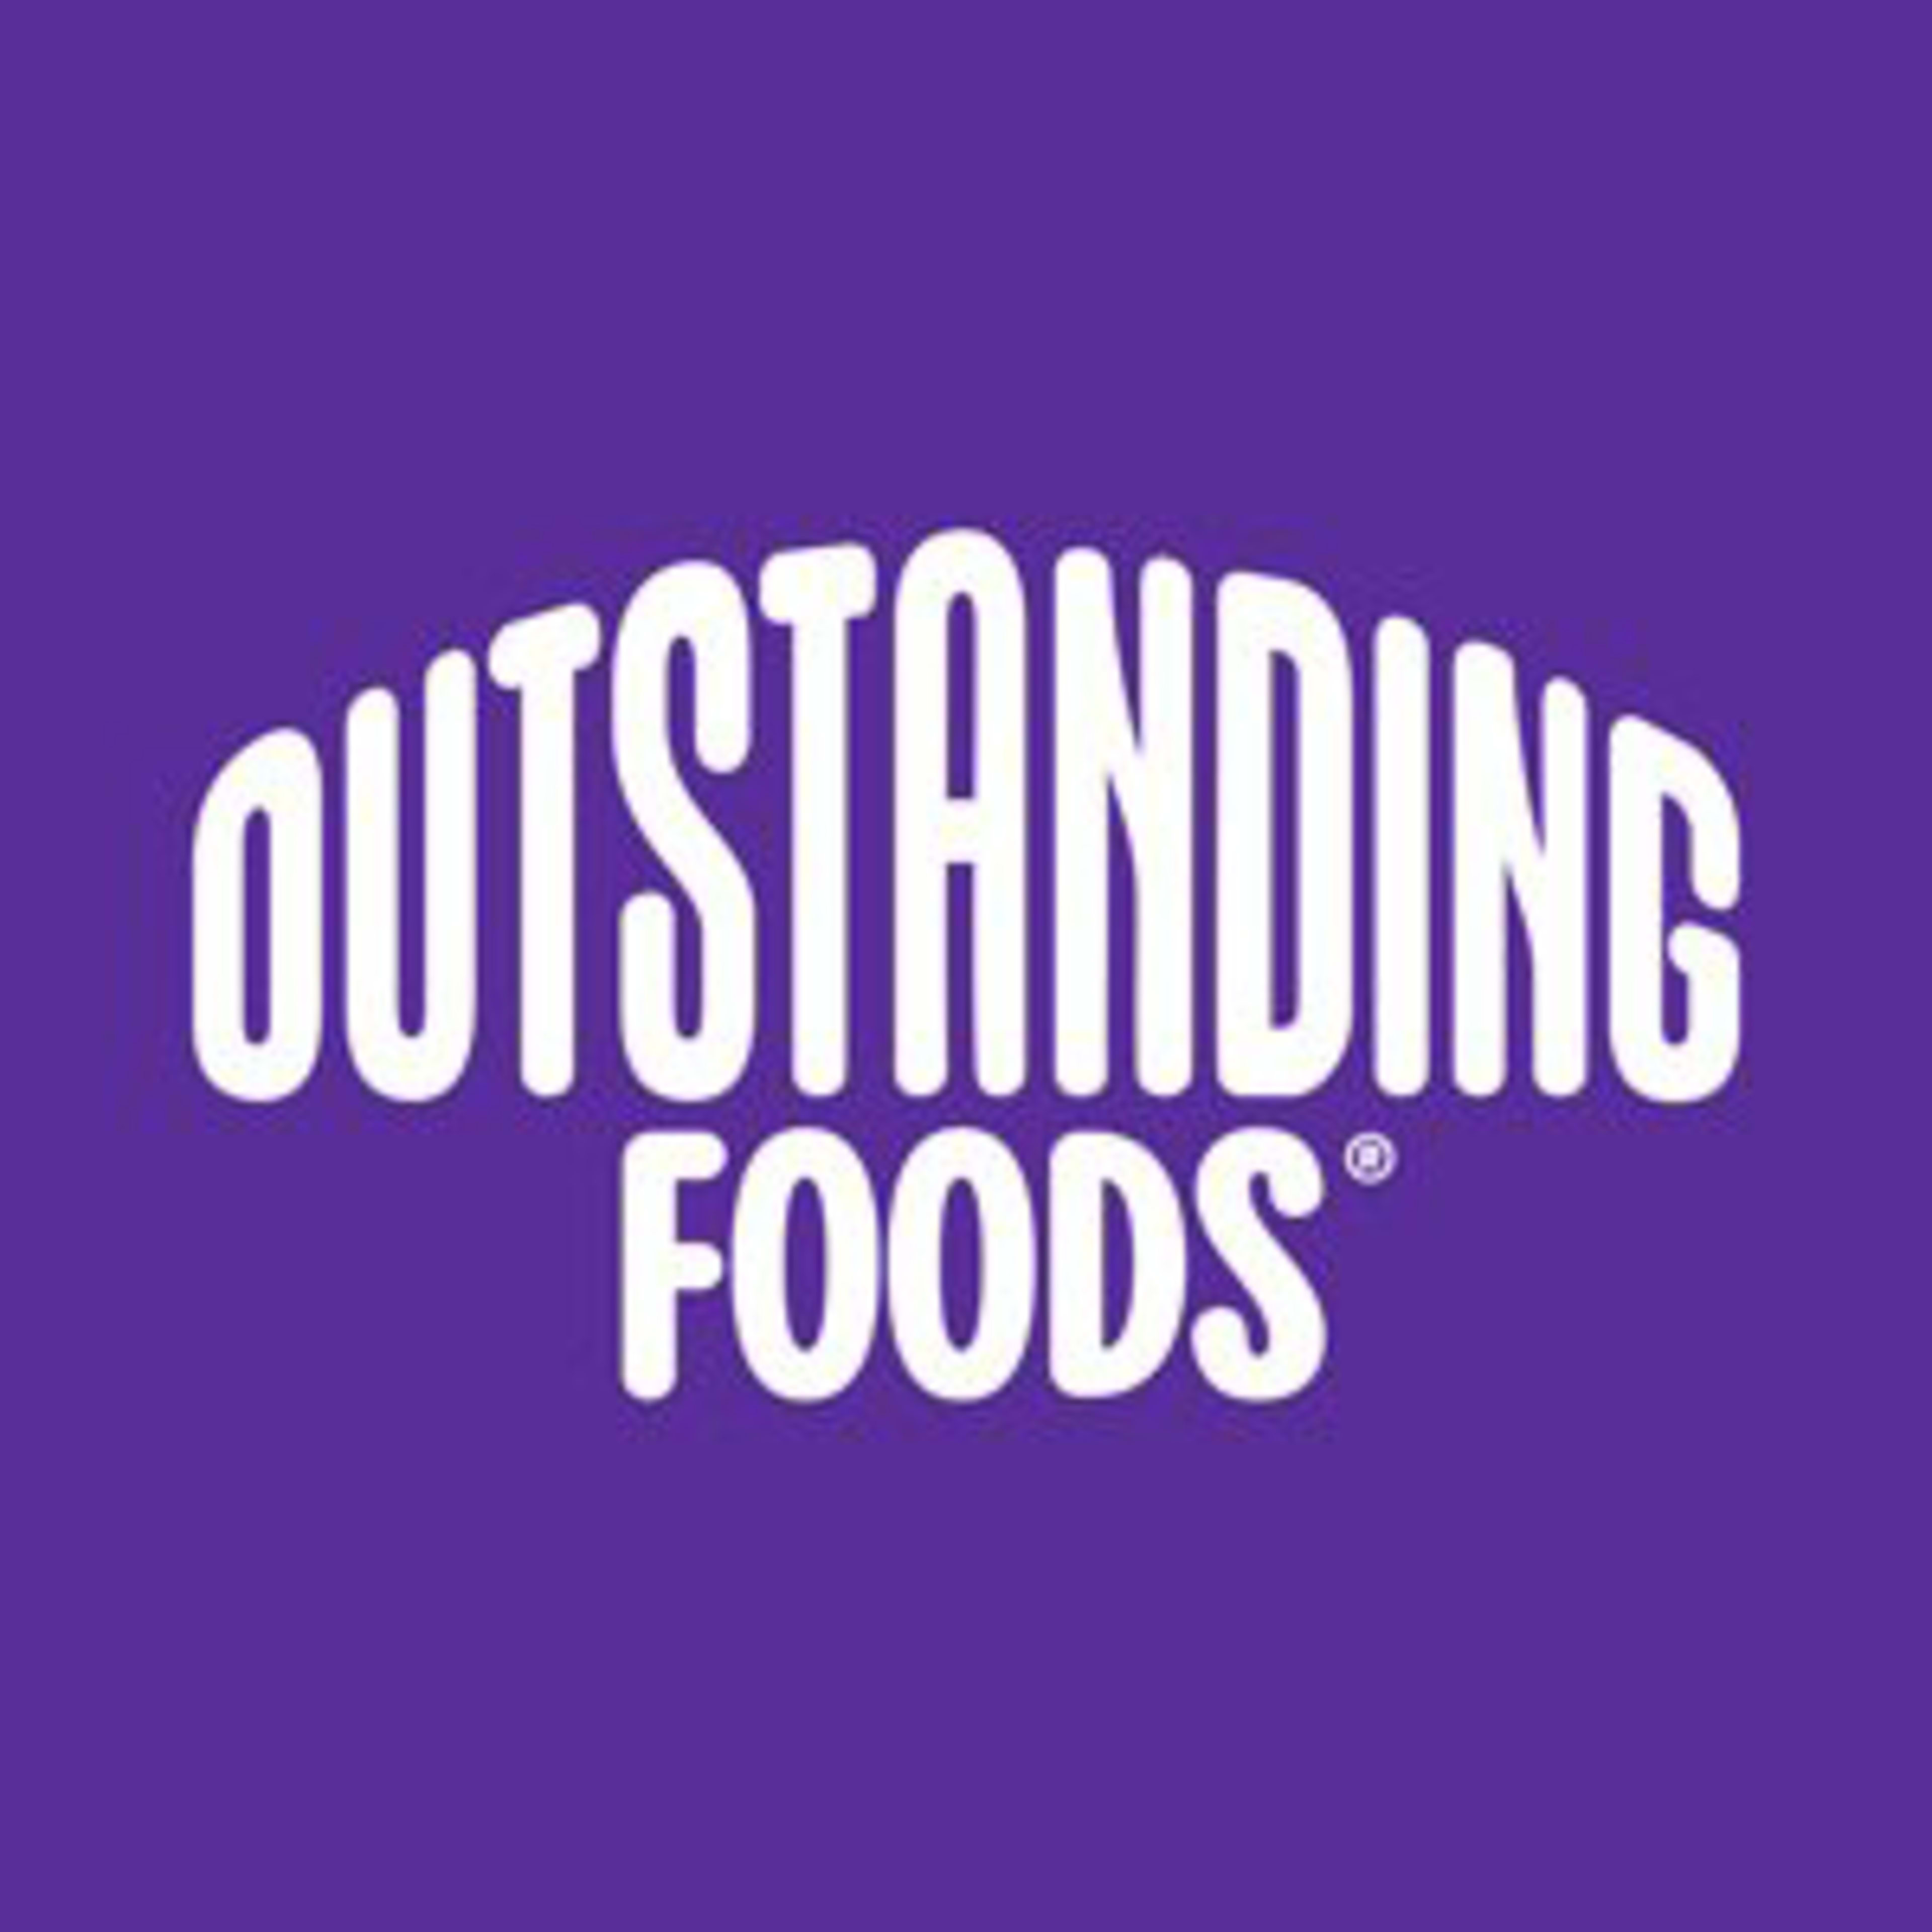 Outstanding Foods Code